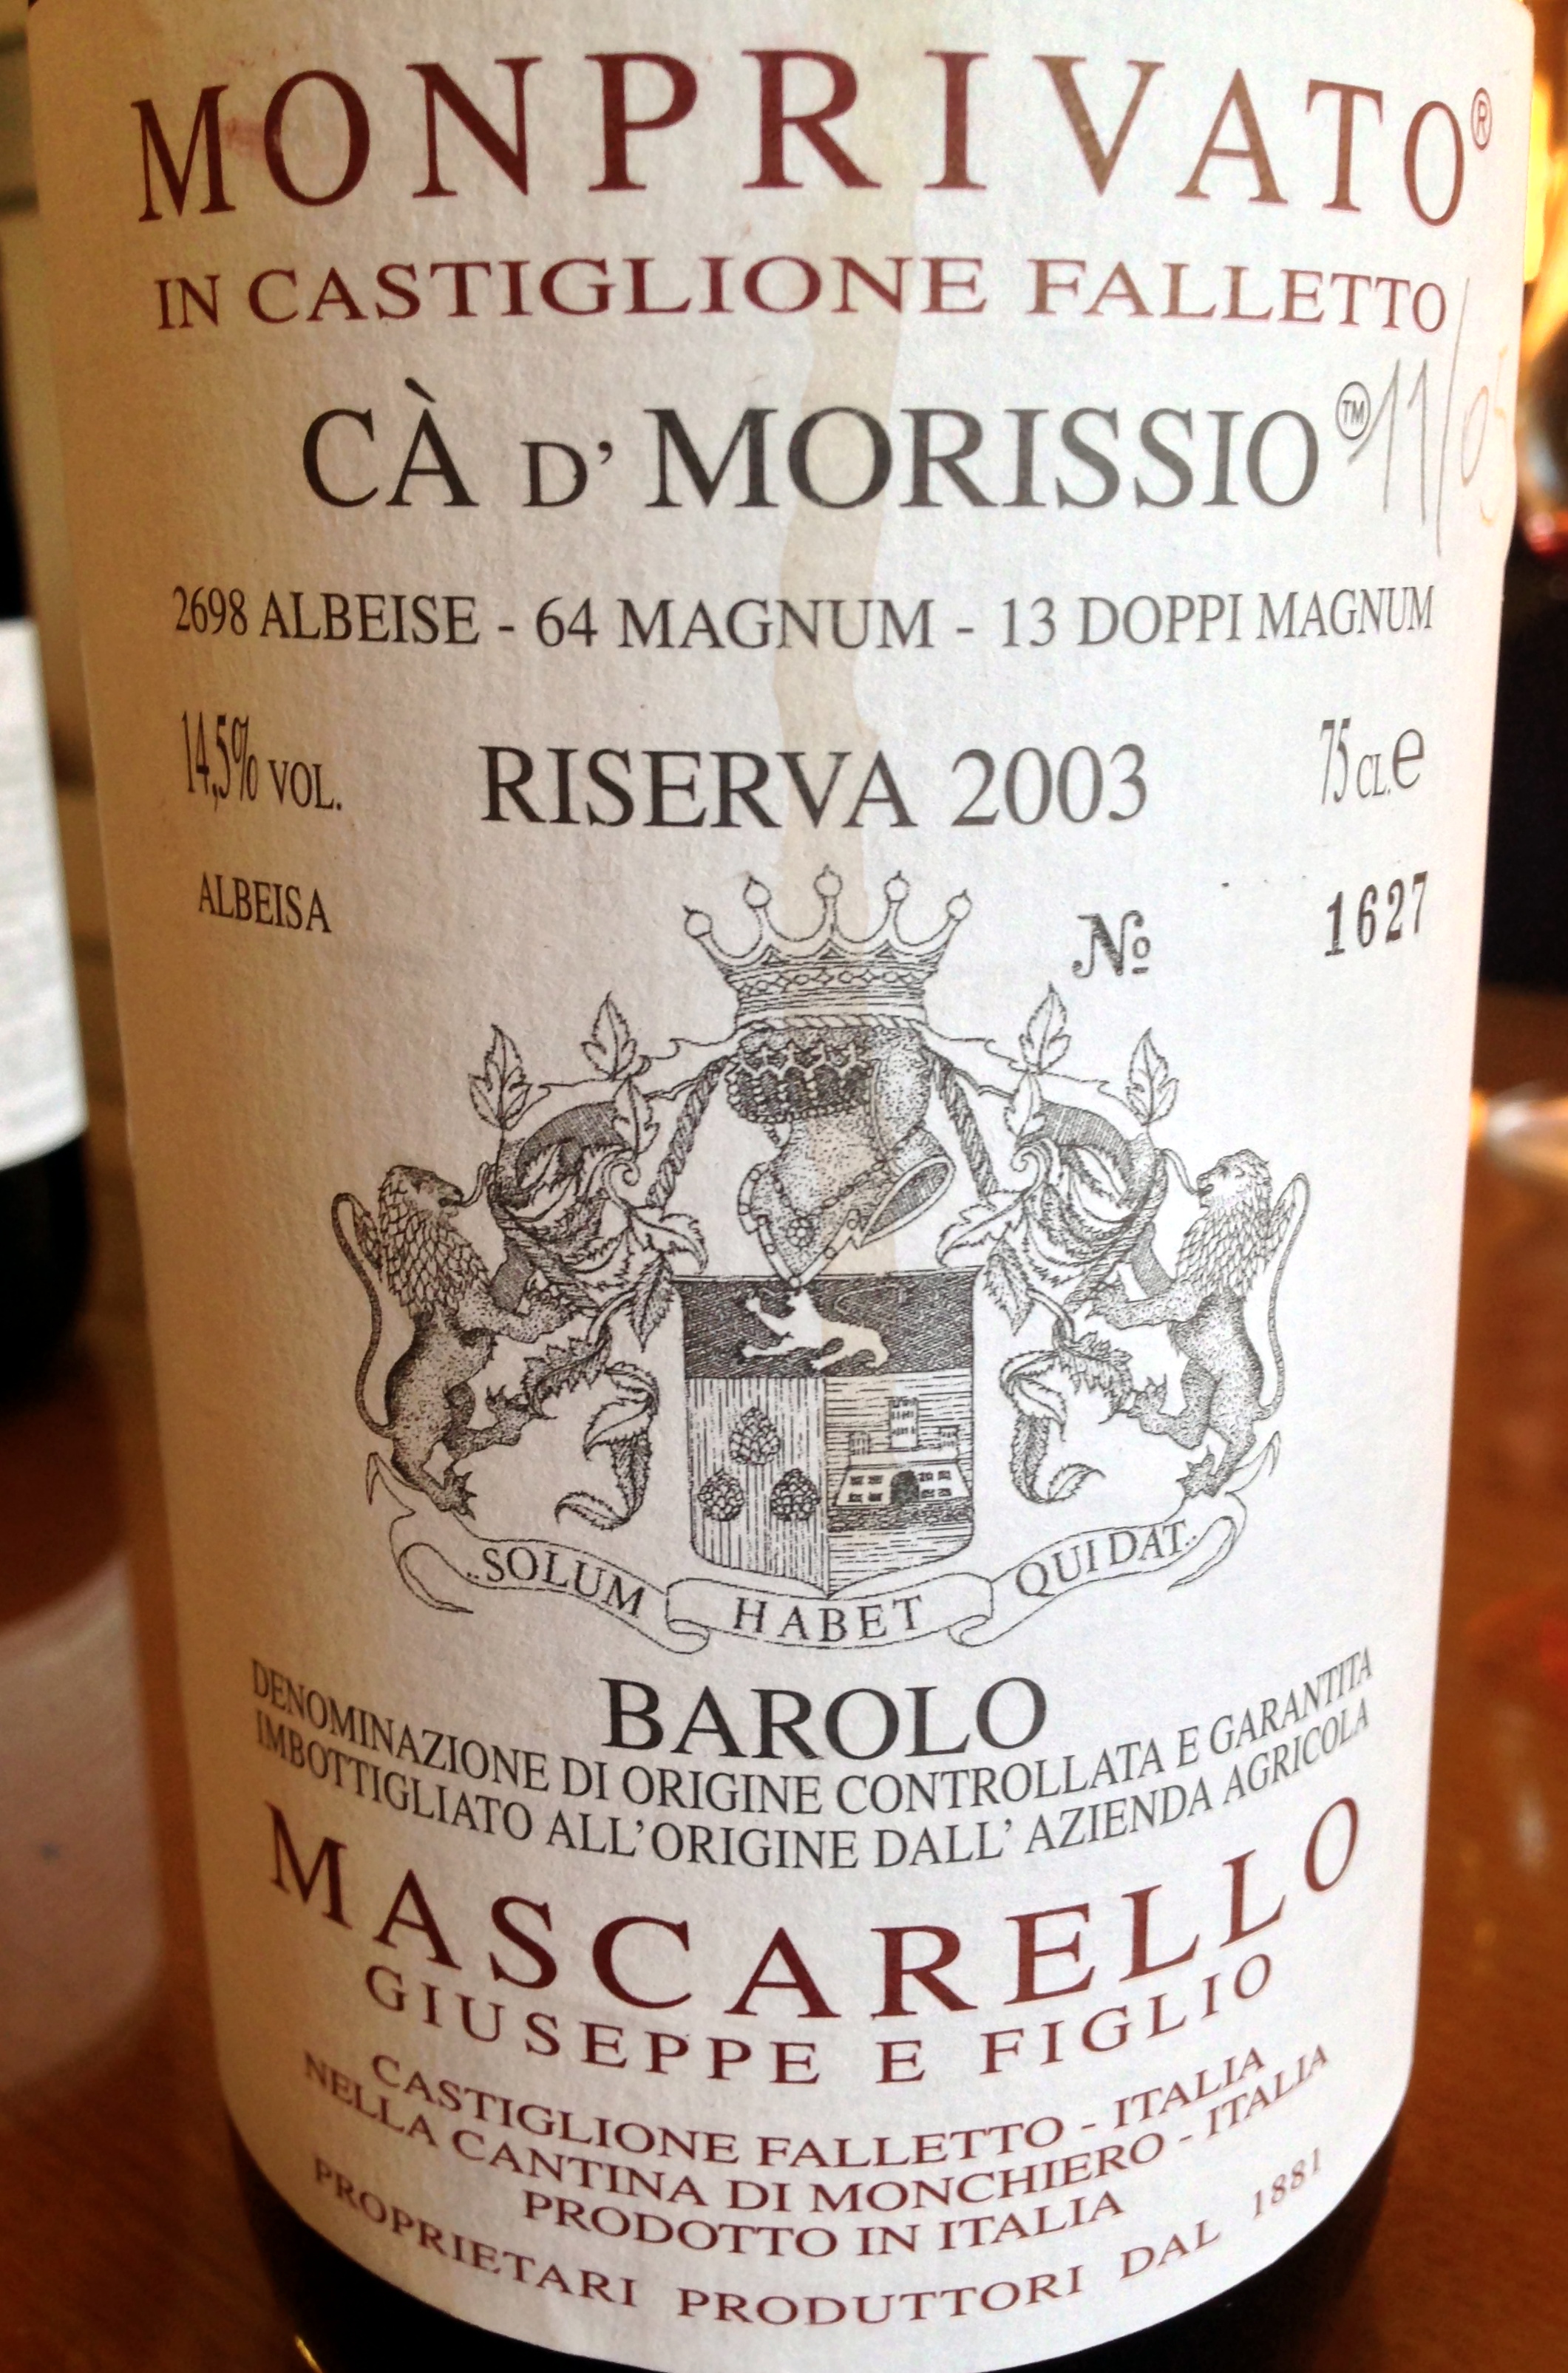 Giuseppe Mascarello Barolo Riserva Ca’ d’Morissio 2003